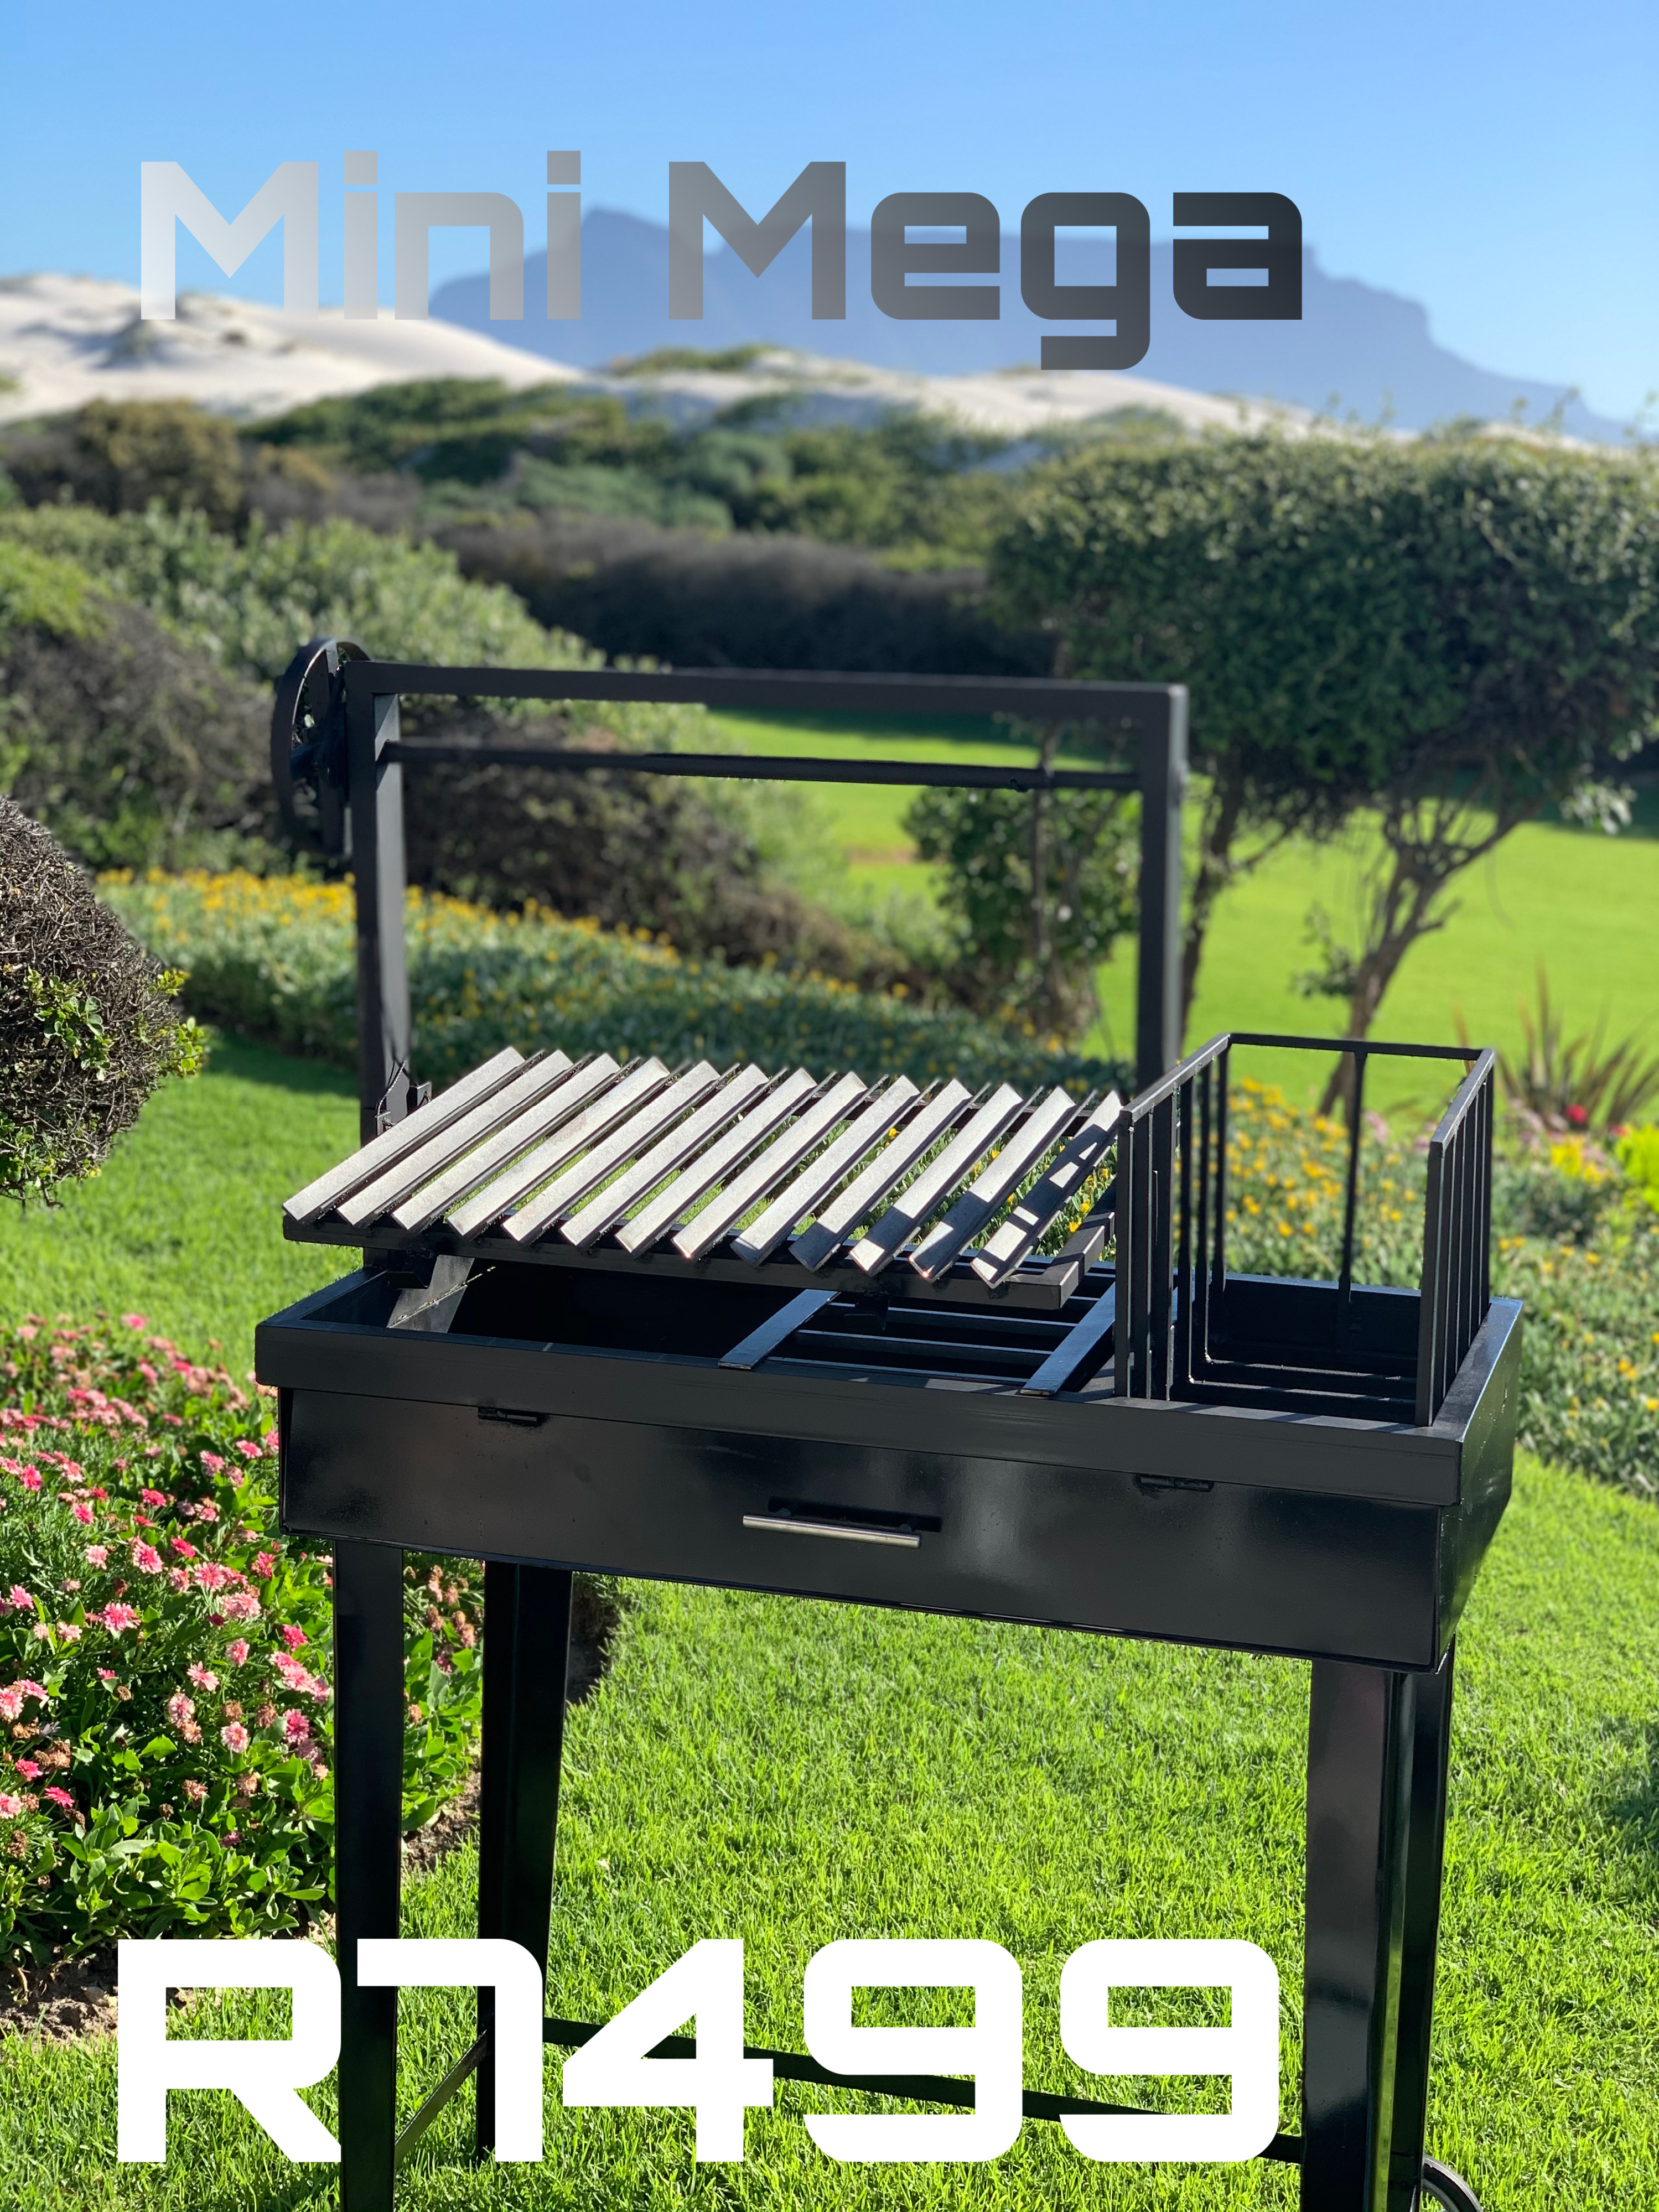 Mini Mega mobile grill